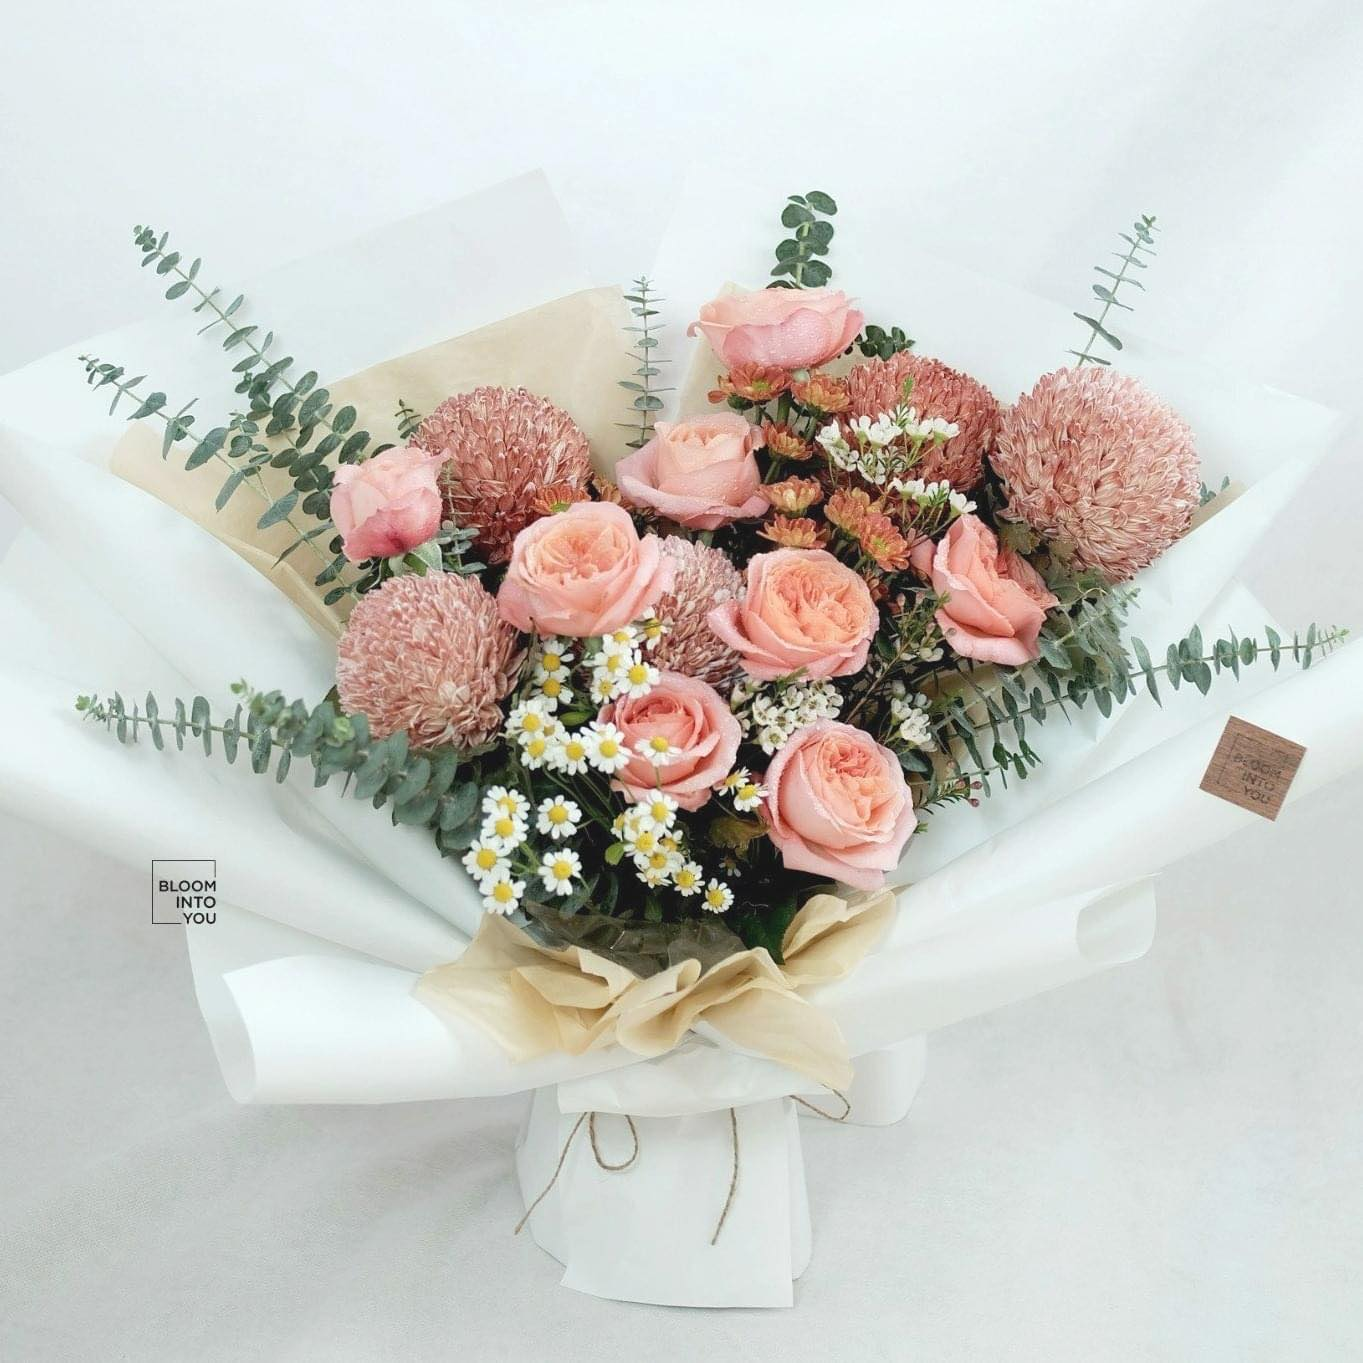 Bó hoa là sự kết hợp giữa cúc mẫu đoen hà lan, hoa hồng london eyes, và hoa phụ lá phụ. Ảnh: Bloom Into You - Flowers & Studio.